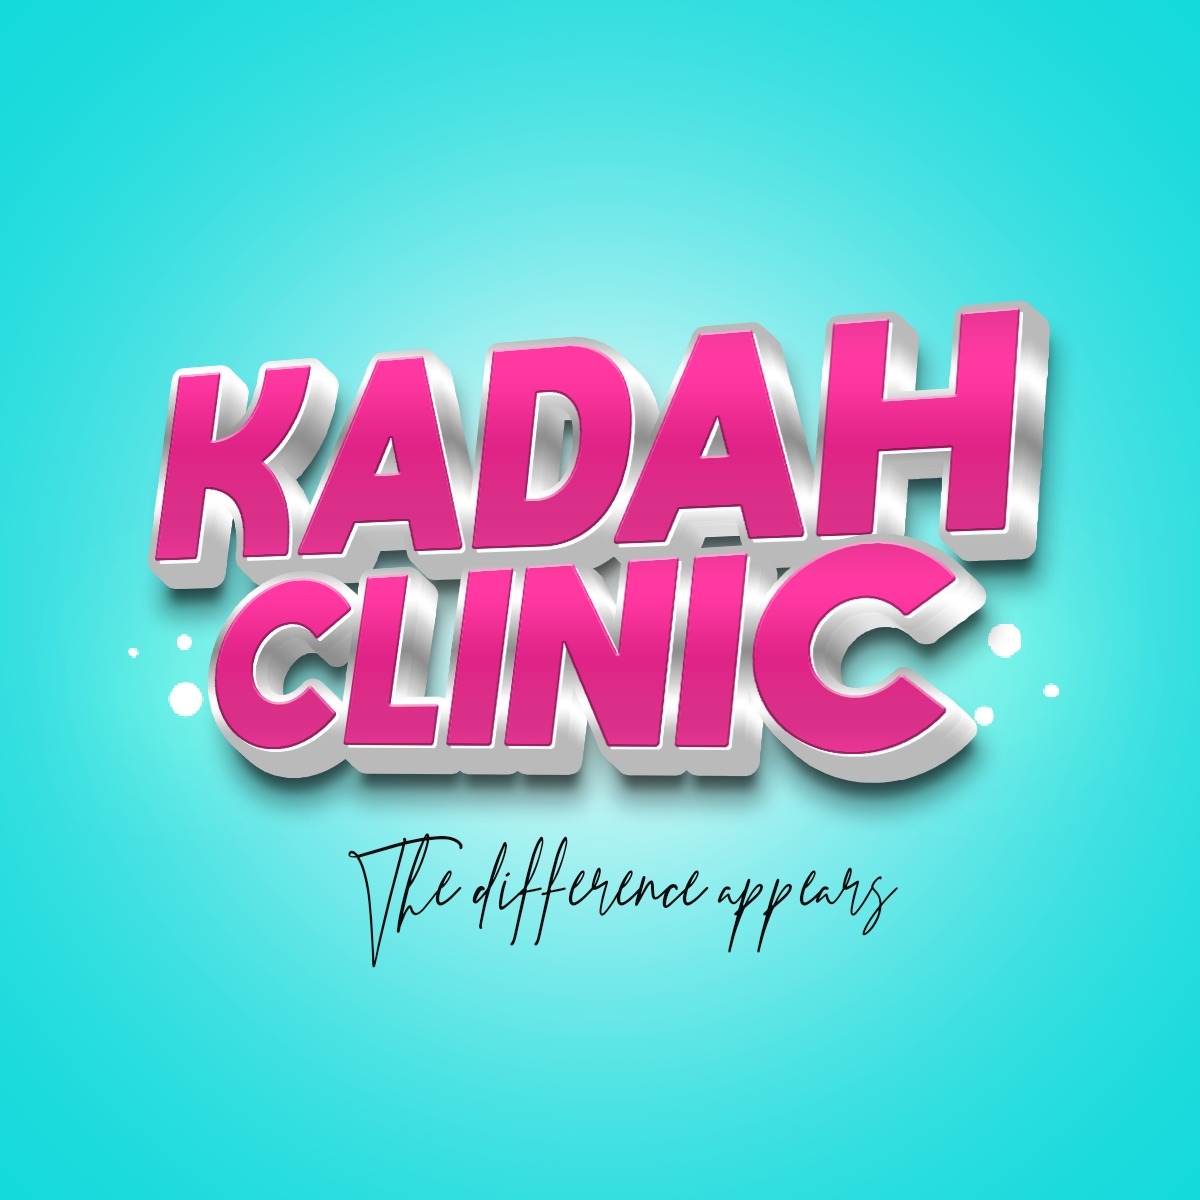 Dr. Kadah Clinic